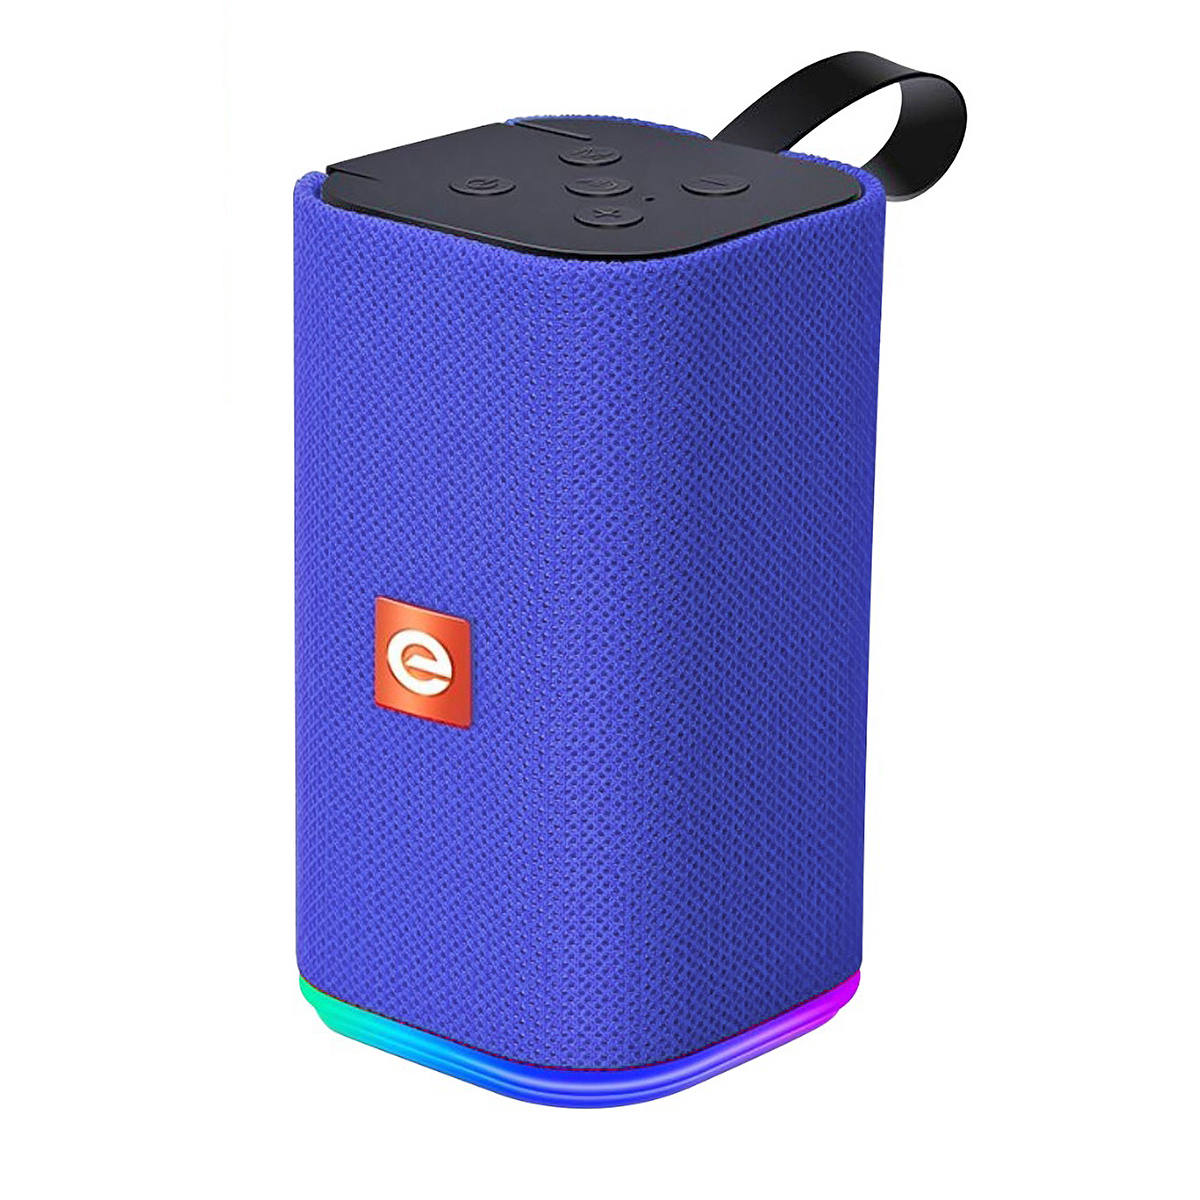 Caixa de Som Bluetooth Portátil Multimídia FM SD P2 USB Mic SoundBox LED RGB com 7 Cores Exbom CS-M31BTL Azul